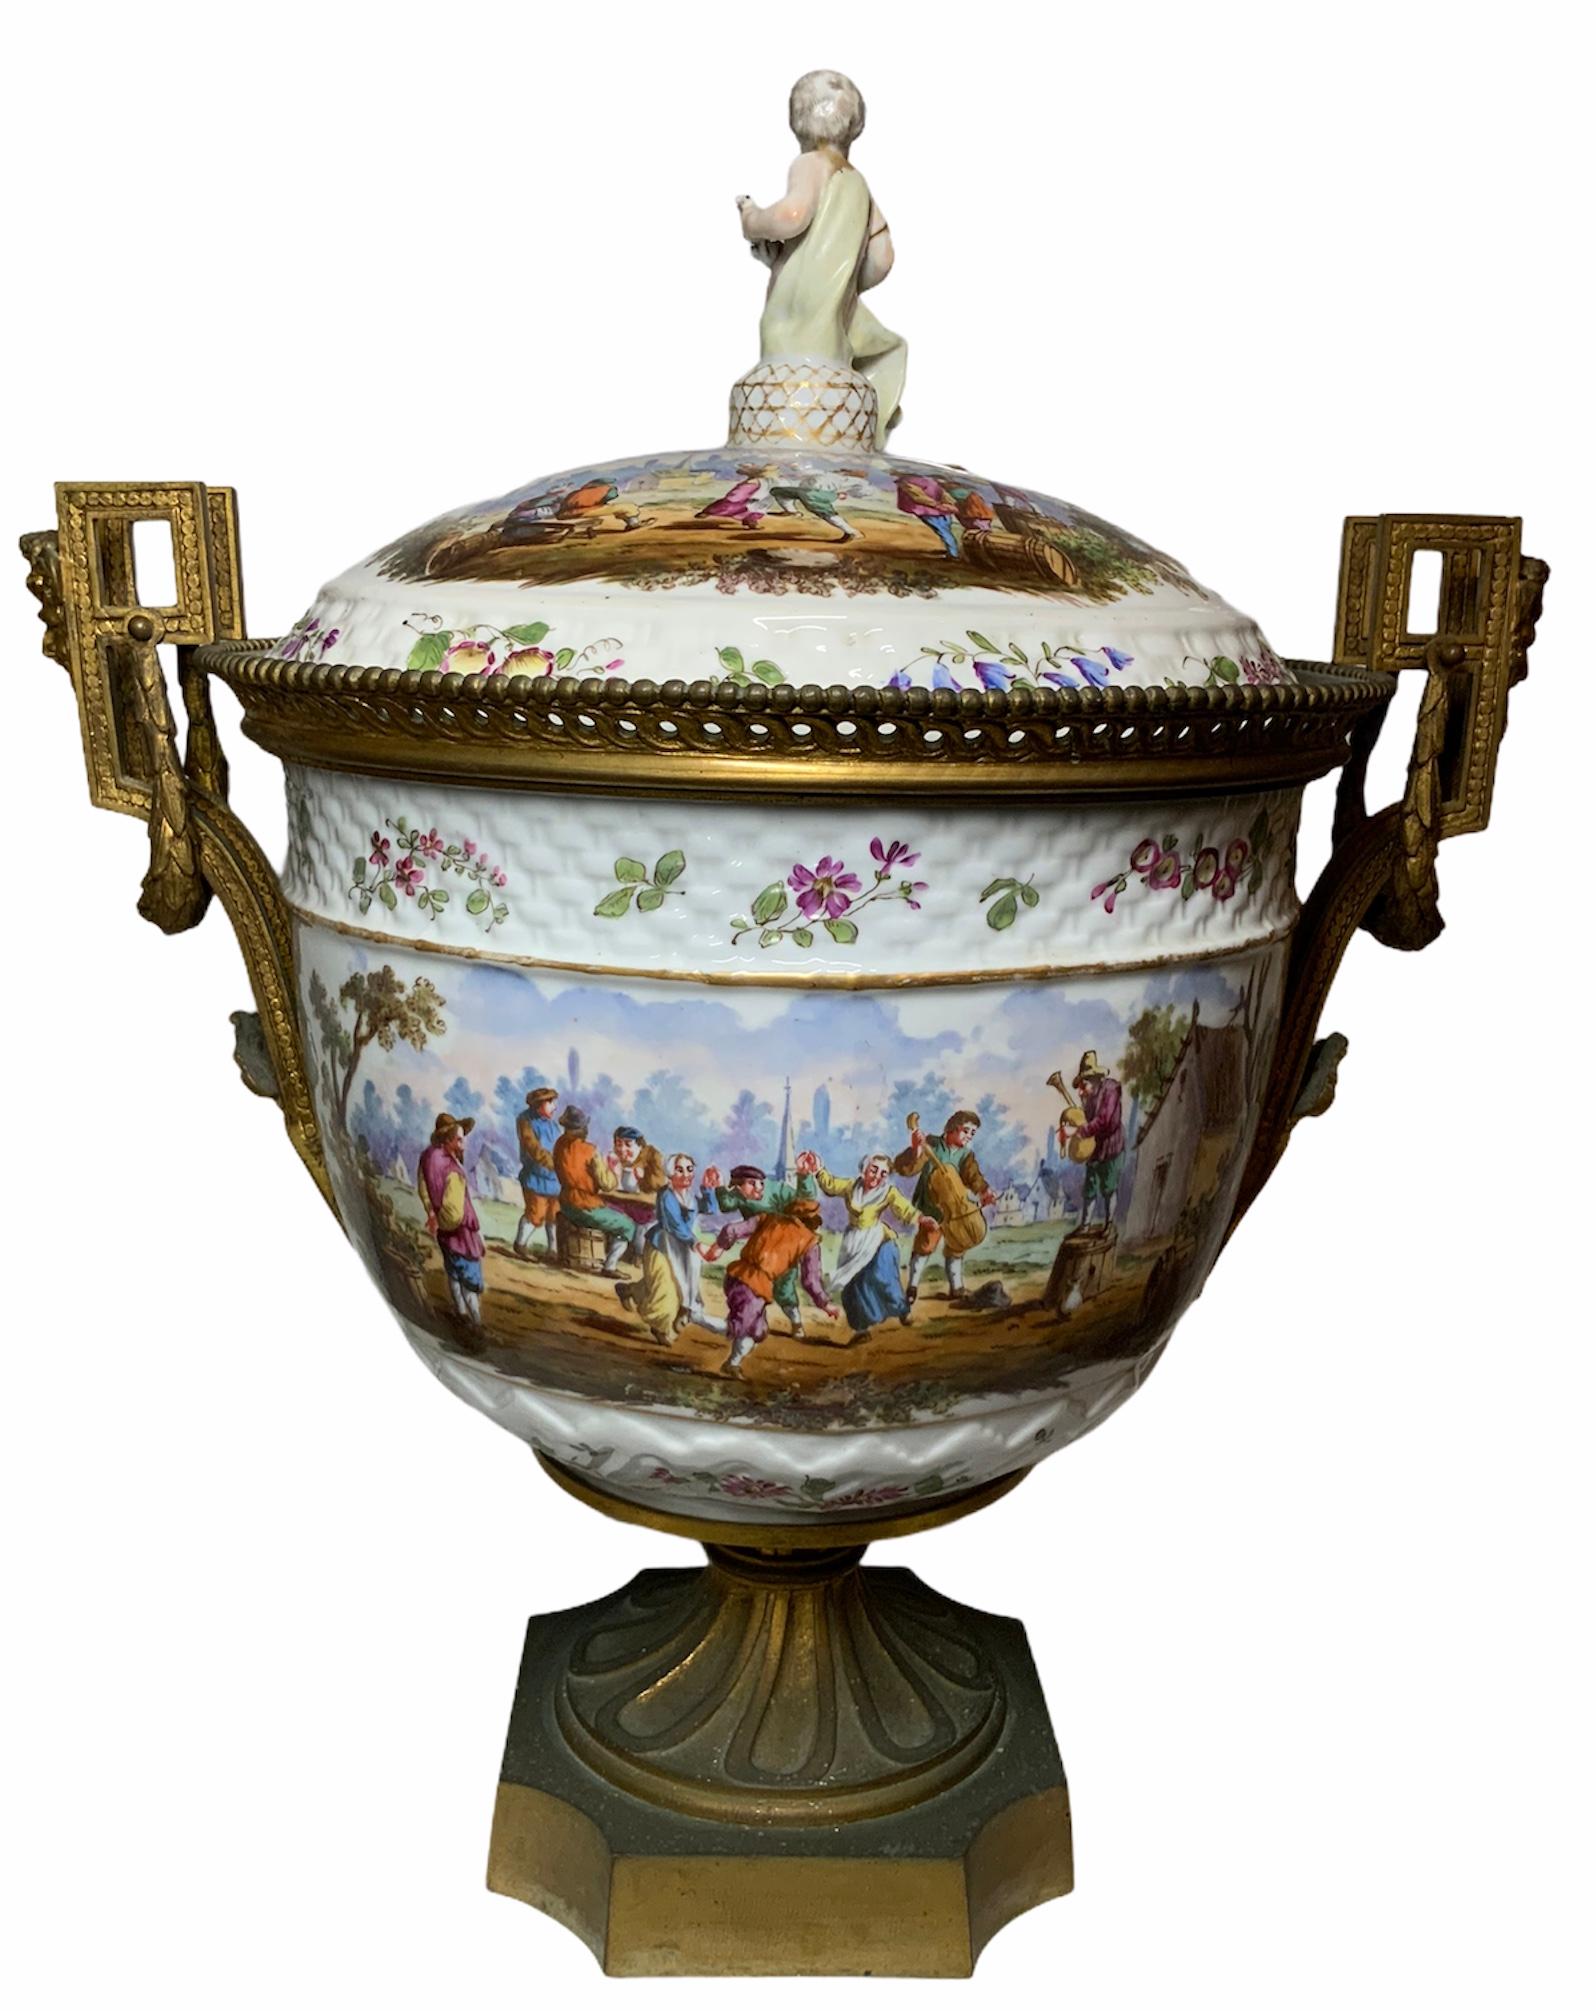 Dies ist eine vergoldete Bronze montiert und handbemalt Porzellan große Schale Vase mit Deckel. Die handgemalte, durchgehende Szene zeigt ein Stadtfest, bei dem einige Bauern tanzen und Instrumente spielen, während andere trinken. Um den oberen und